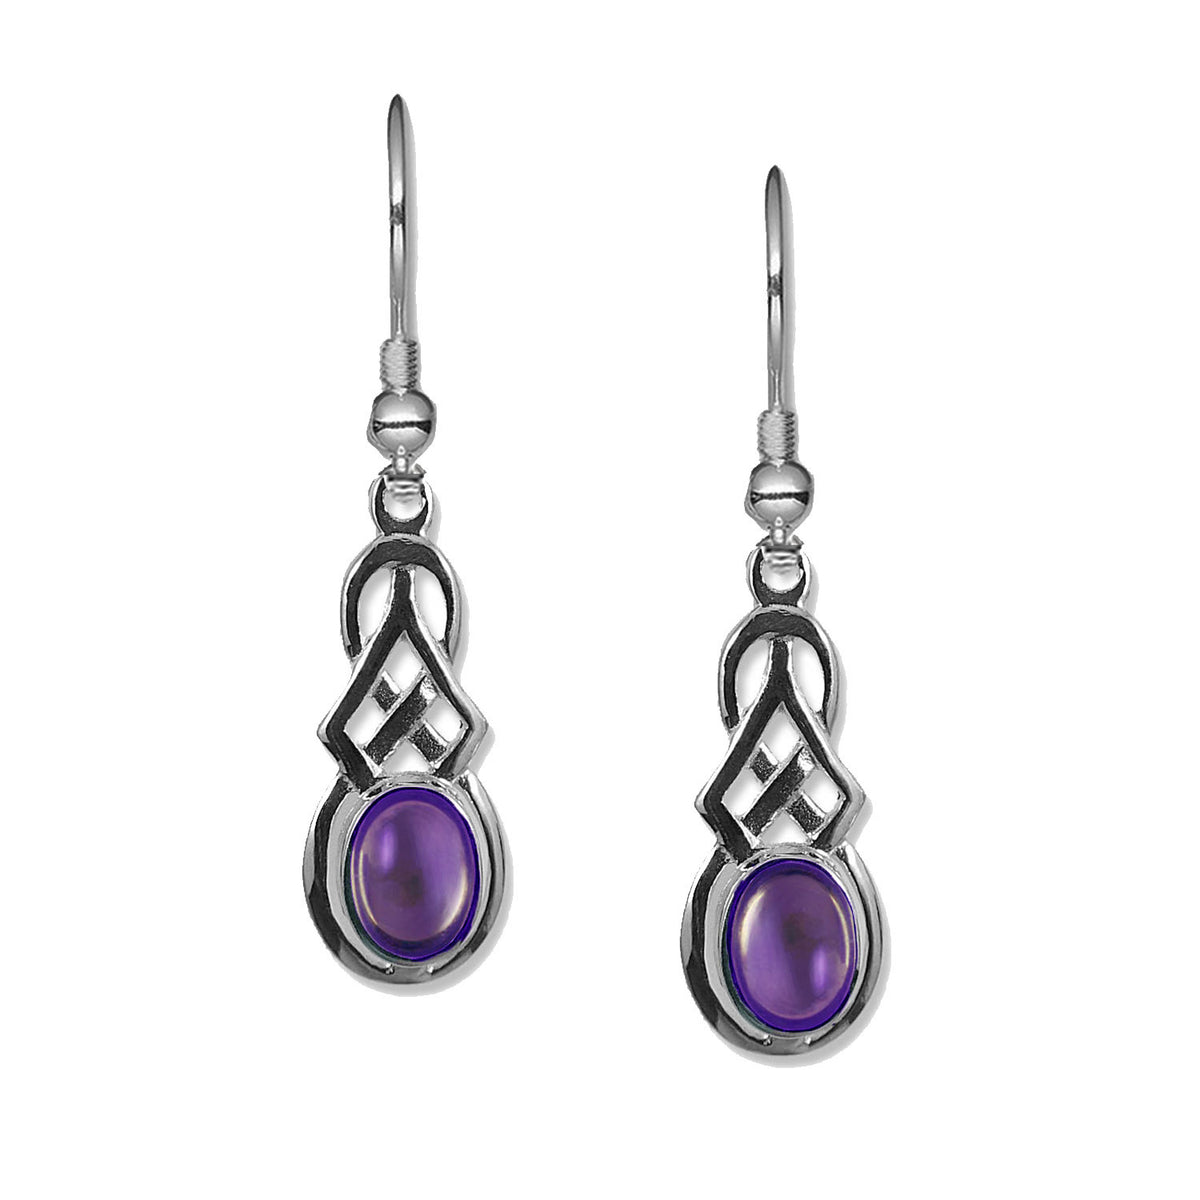 celtic earrings oval amethyst - celtic earring jewellery